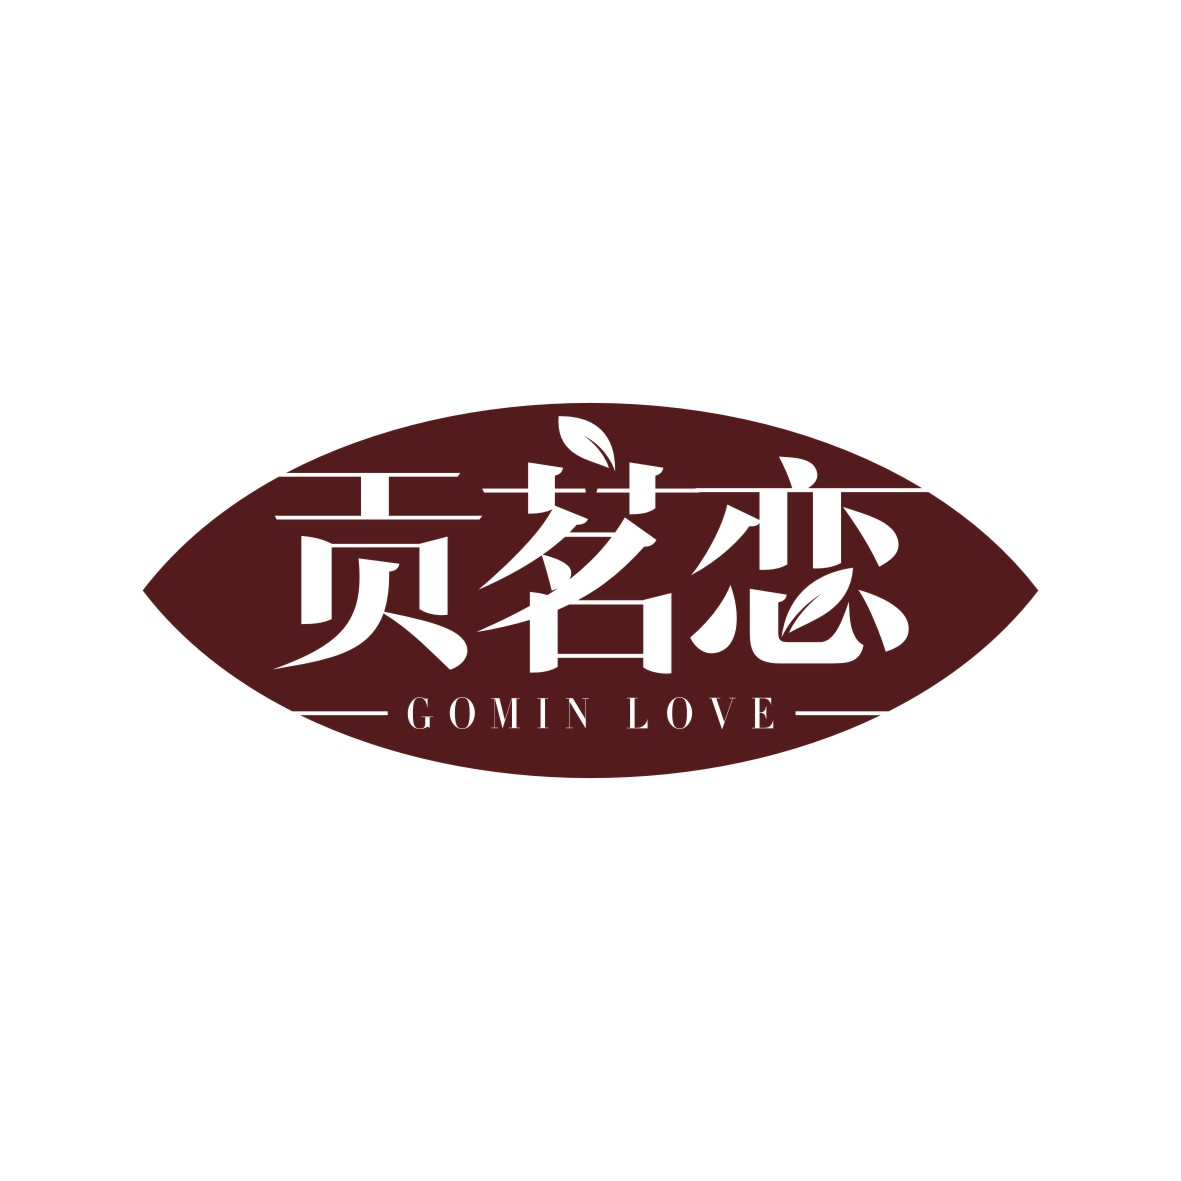 刘凯凯商标贡茗恋 GOMIN LOVE（30类）多少钱？